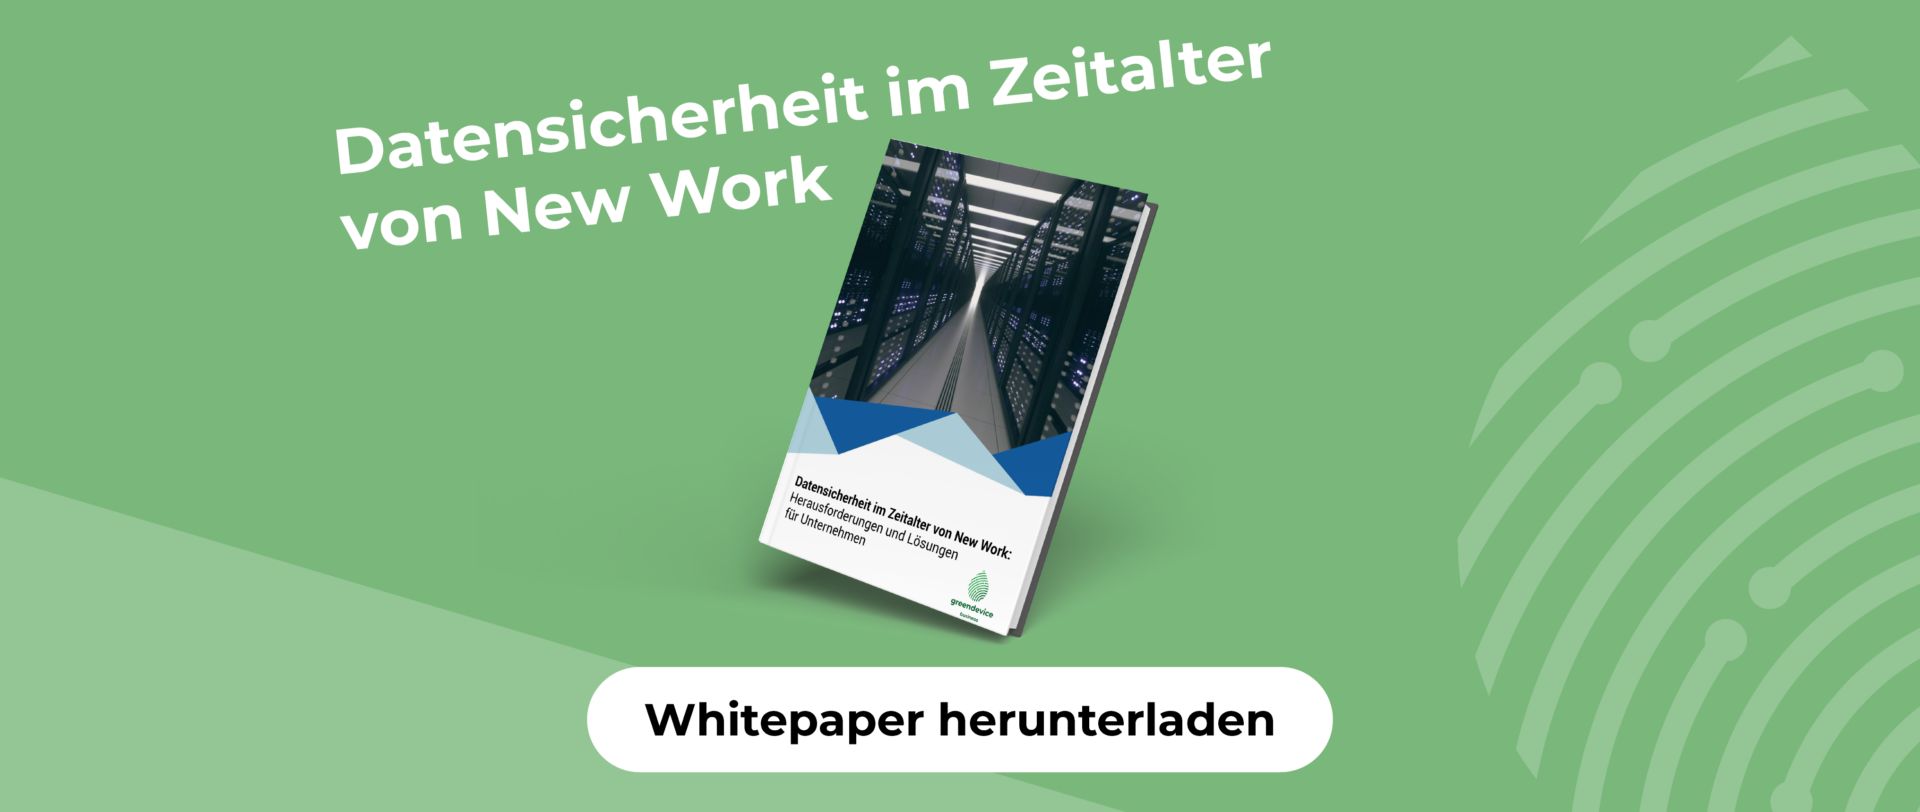 Whitepaper download der business GmbH jetzt herunterladen!